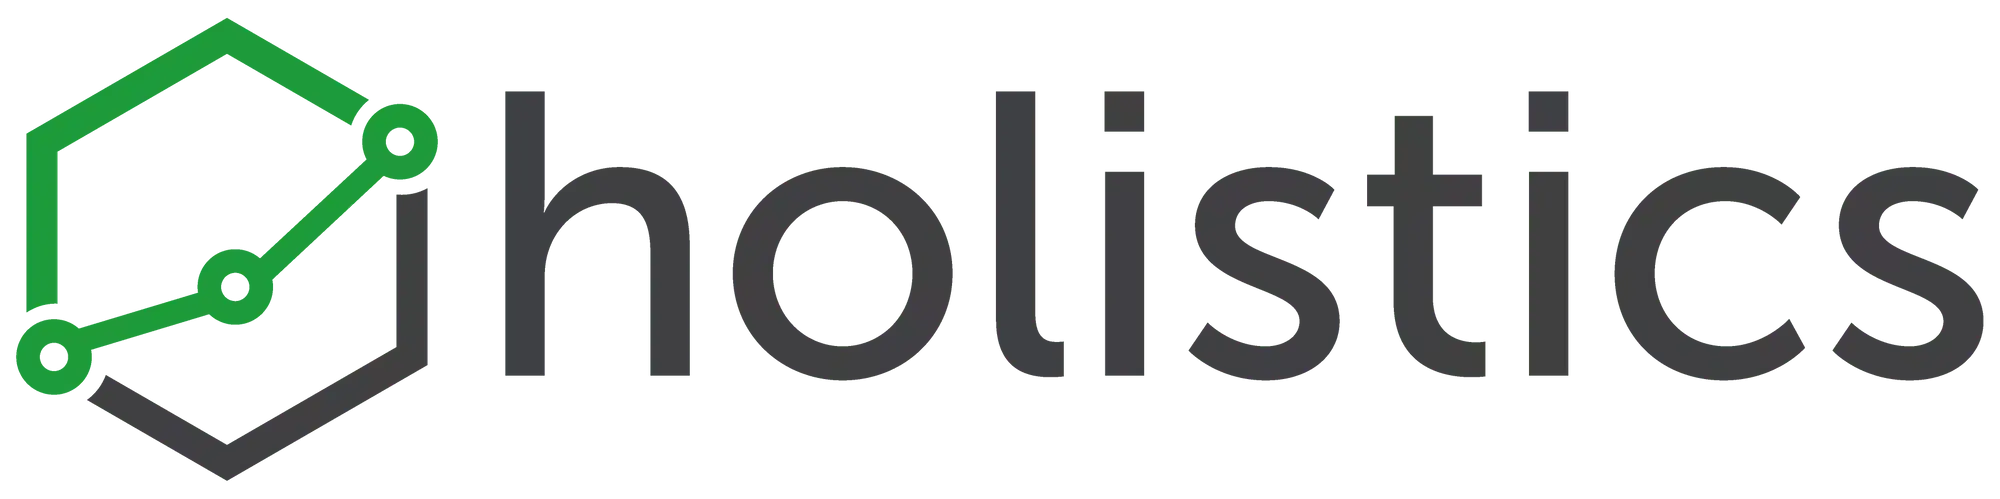 logo-holistics